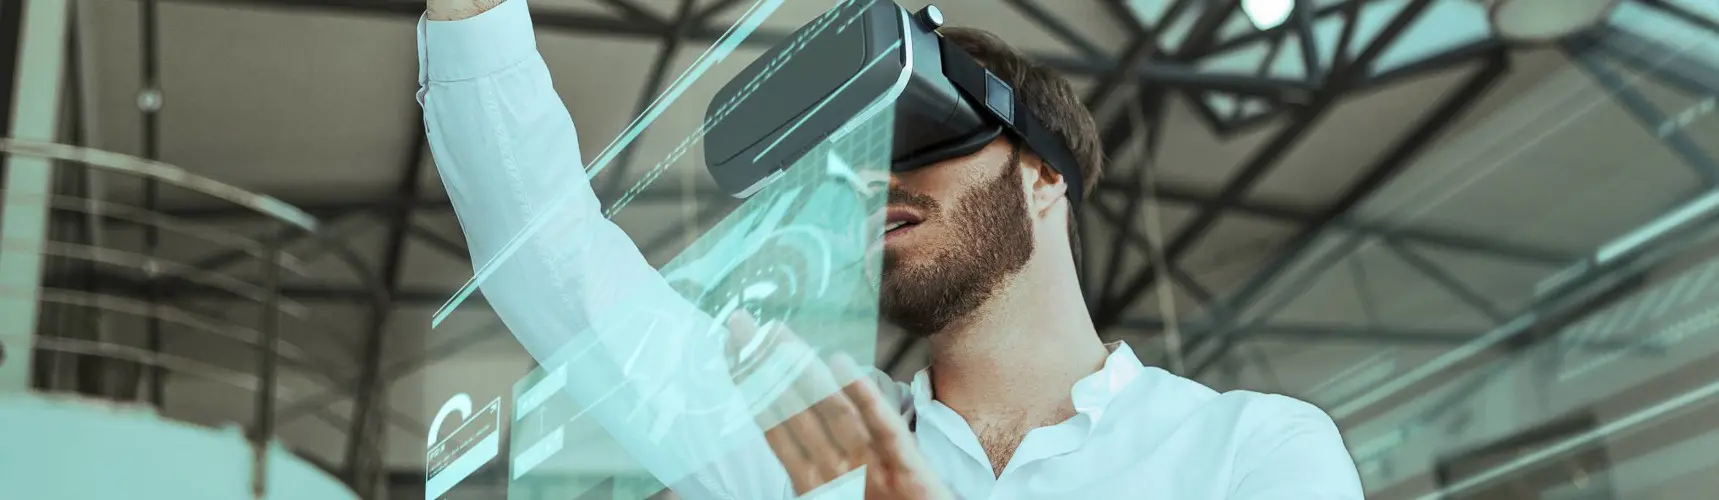 Transformação digital na logística: homem com óculos de realidade virtual arrasta imagens com as mãos